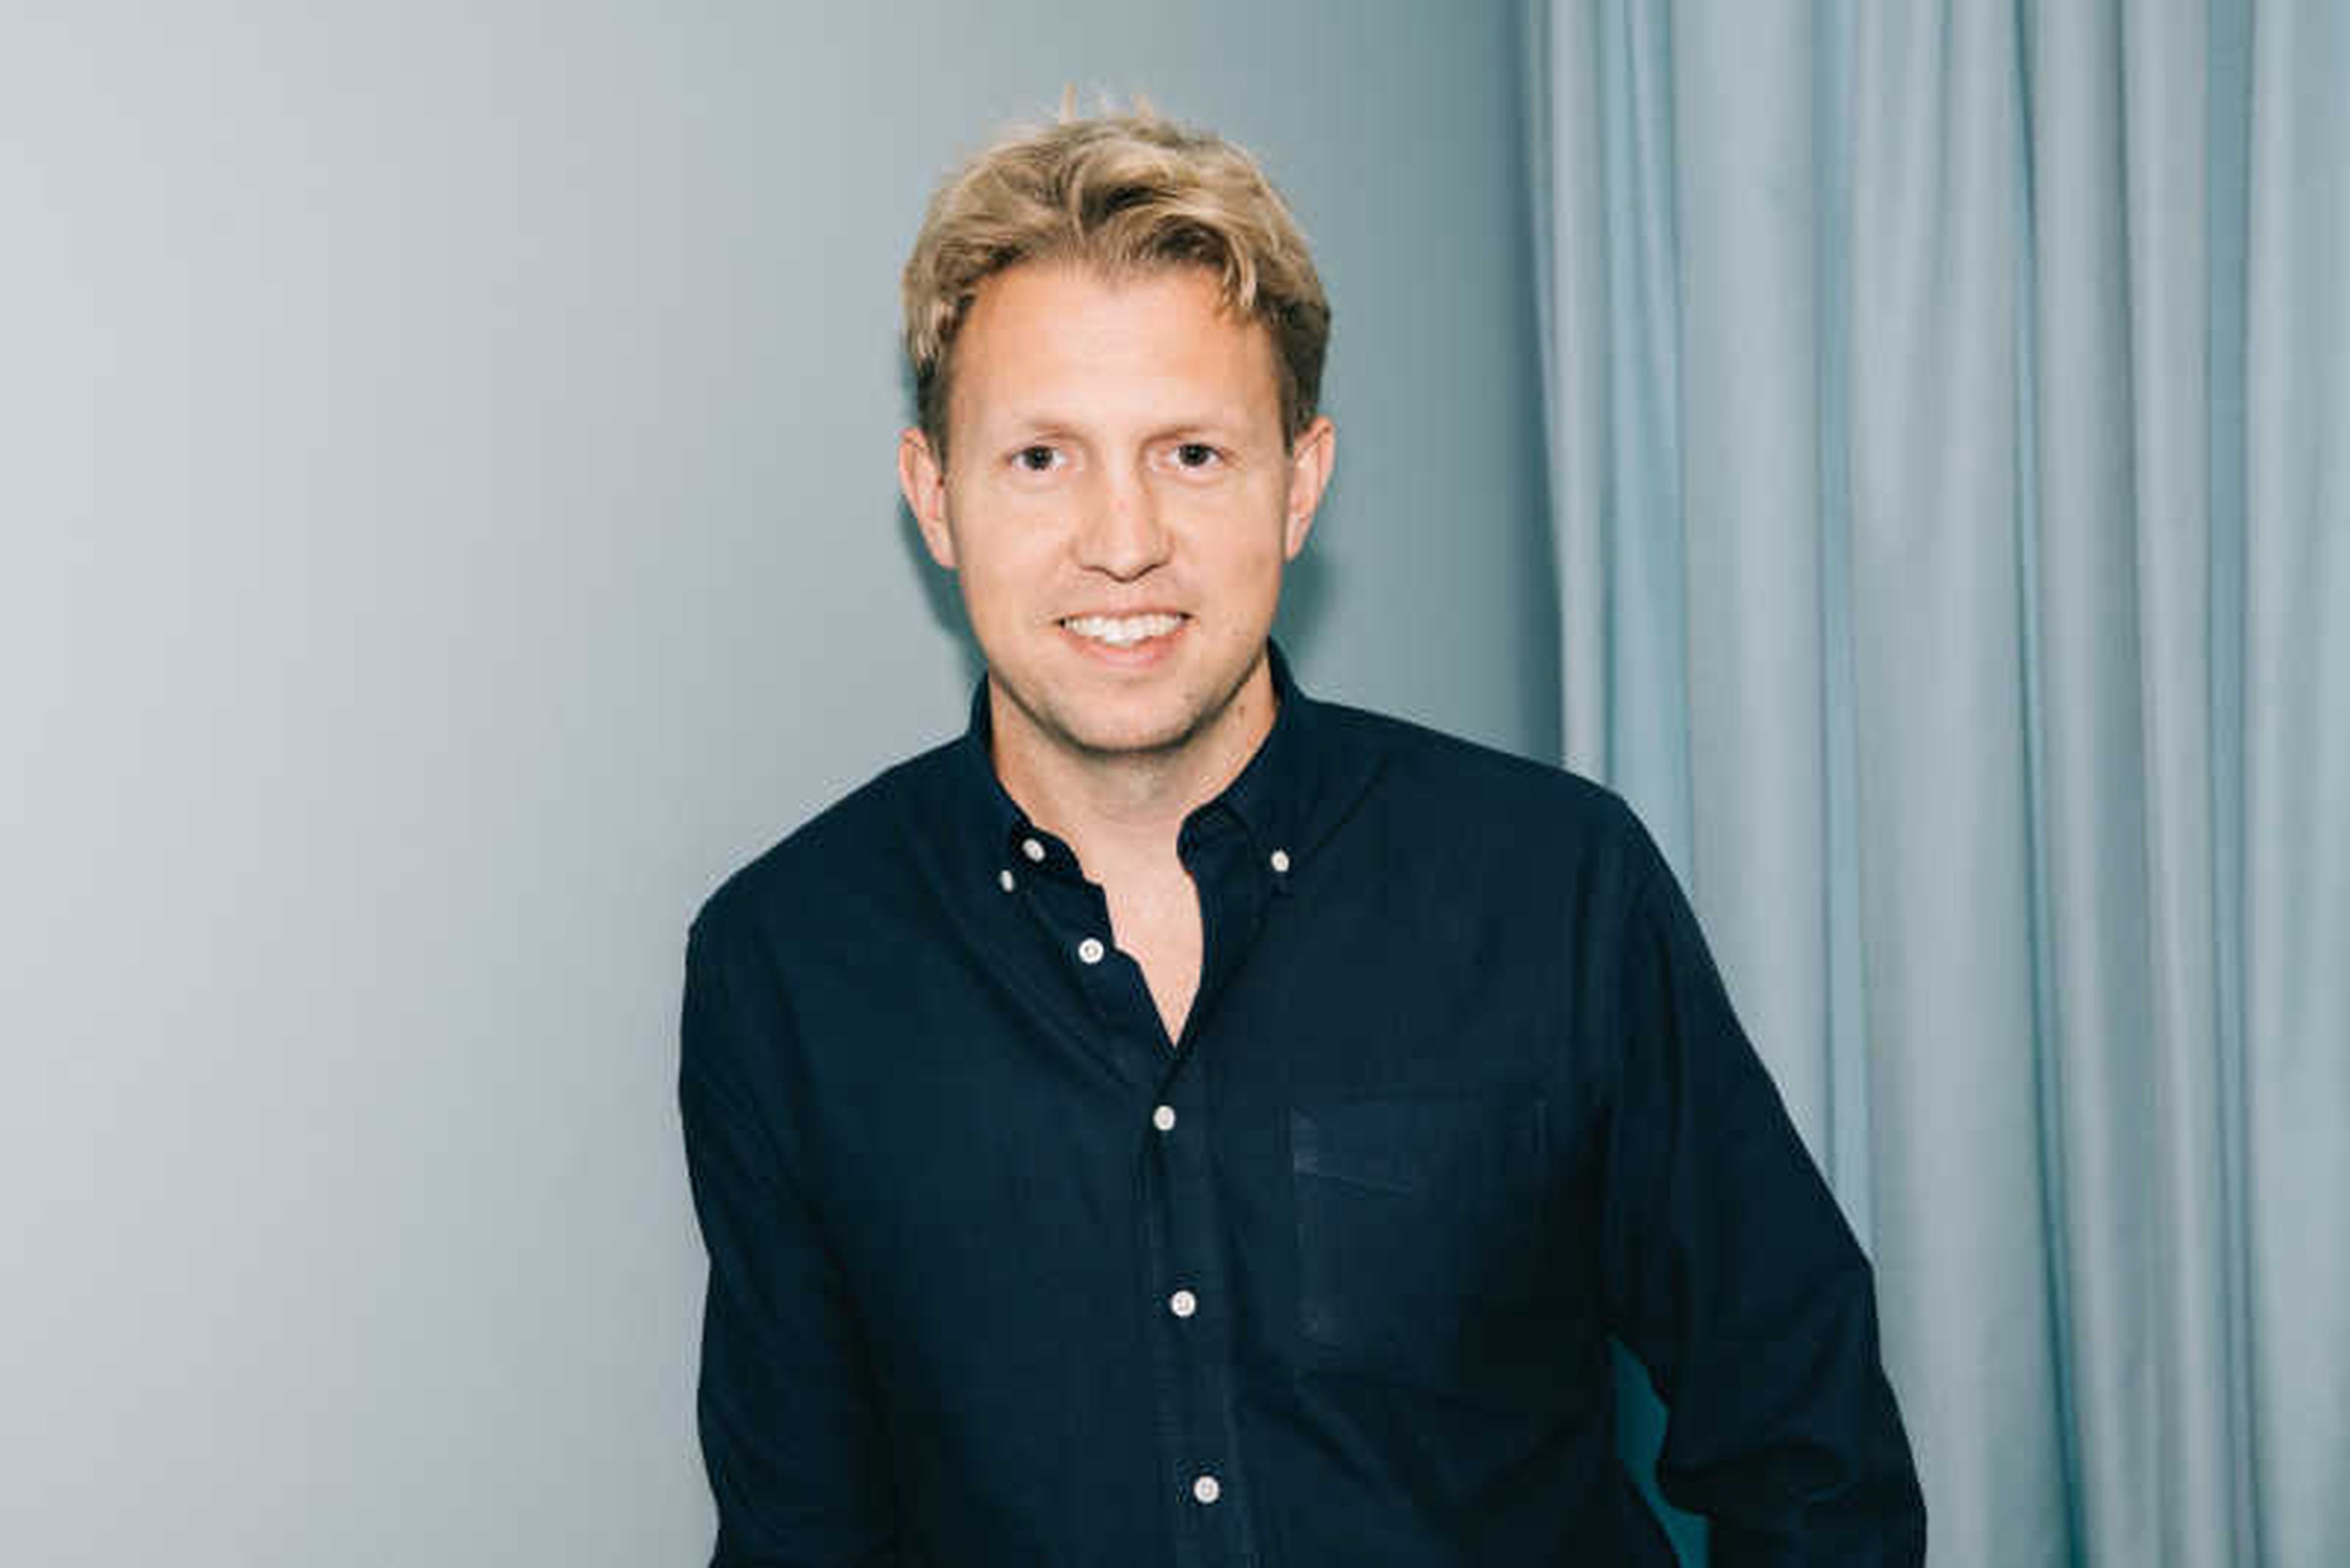 Daniel Kjellén, CEO y fundador de Tink